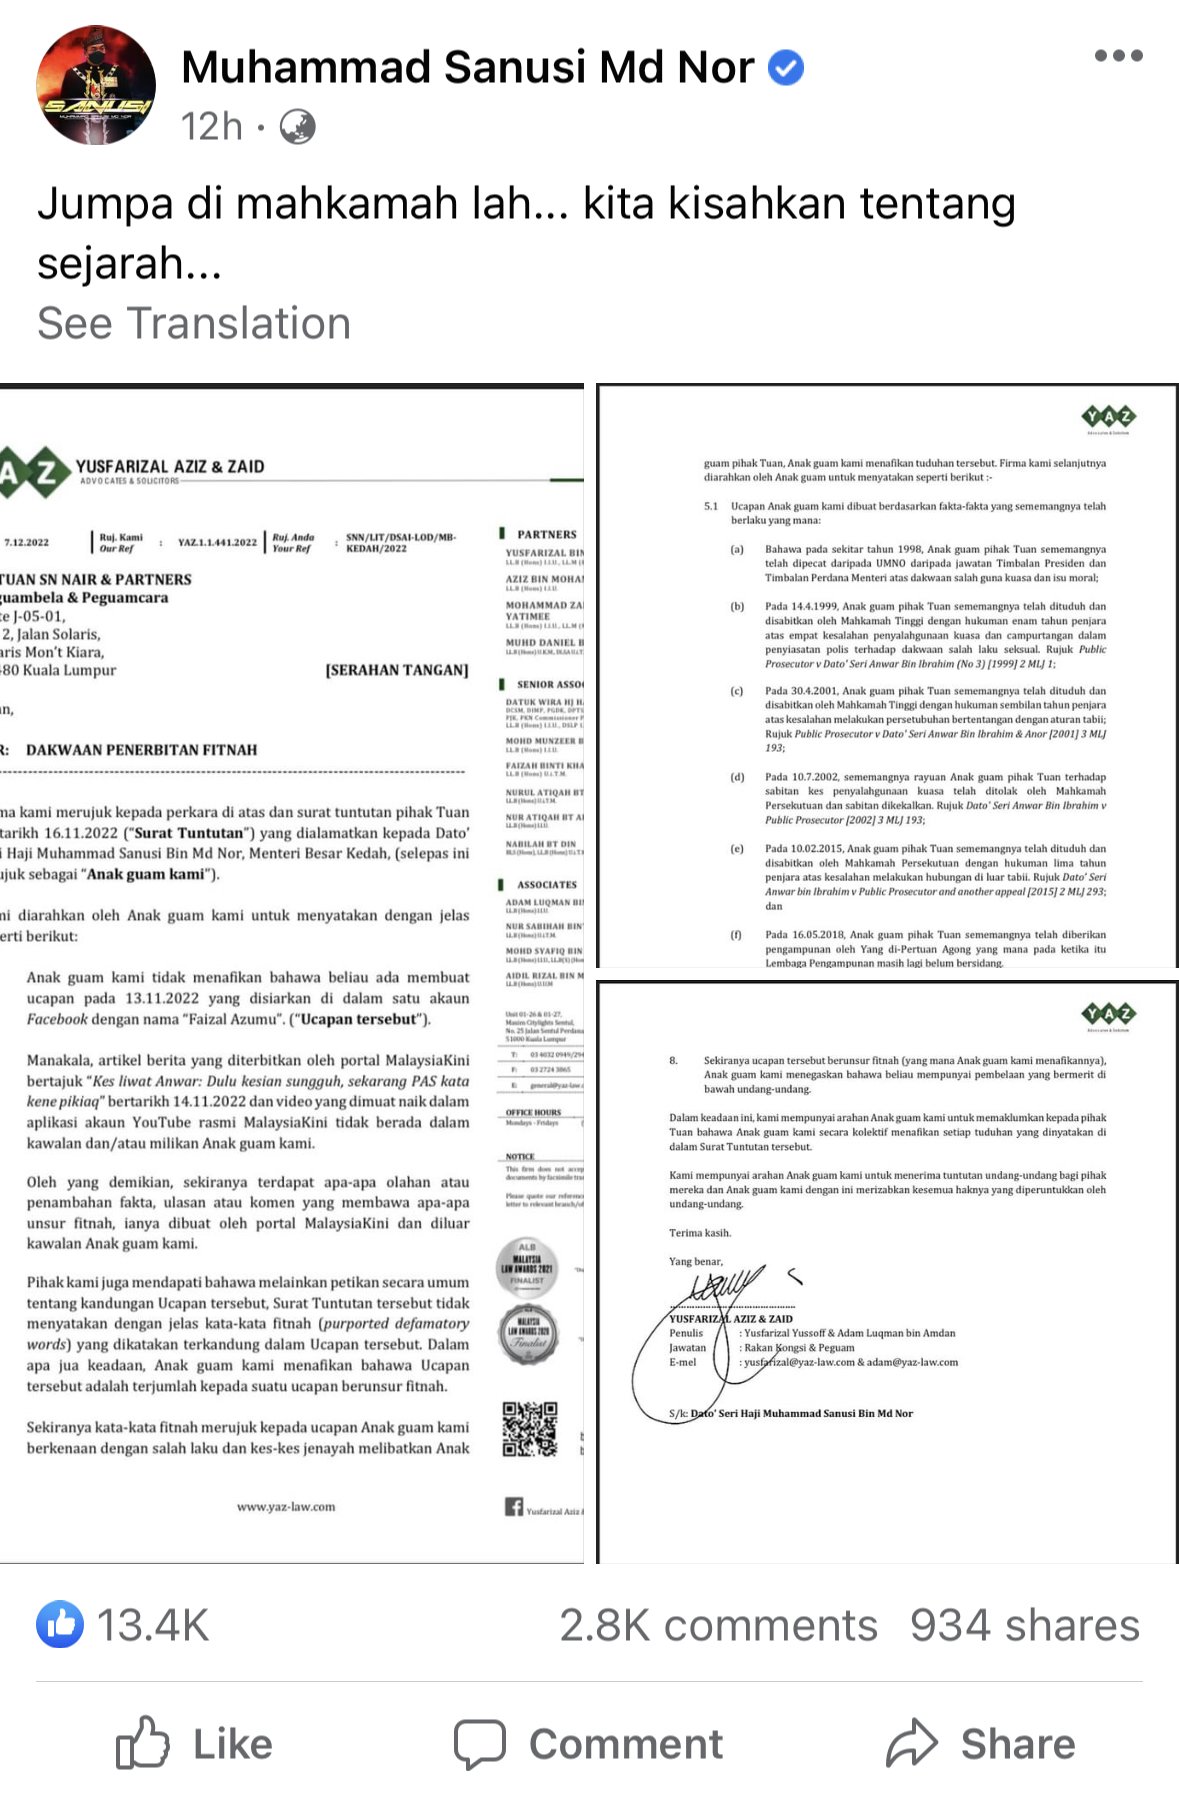 沙努西周二晚在面子书上传一封律师信。